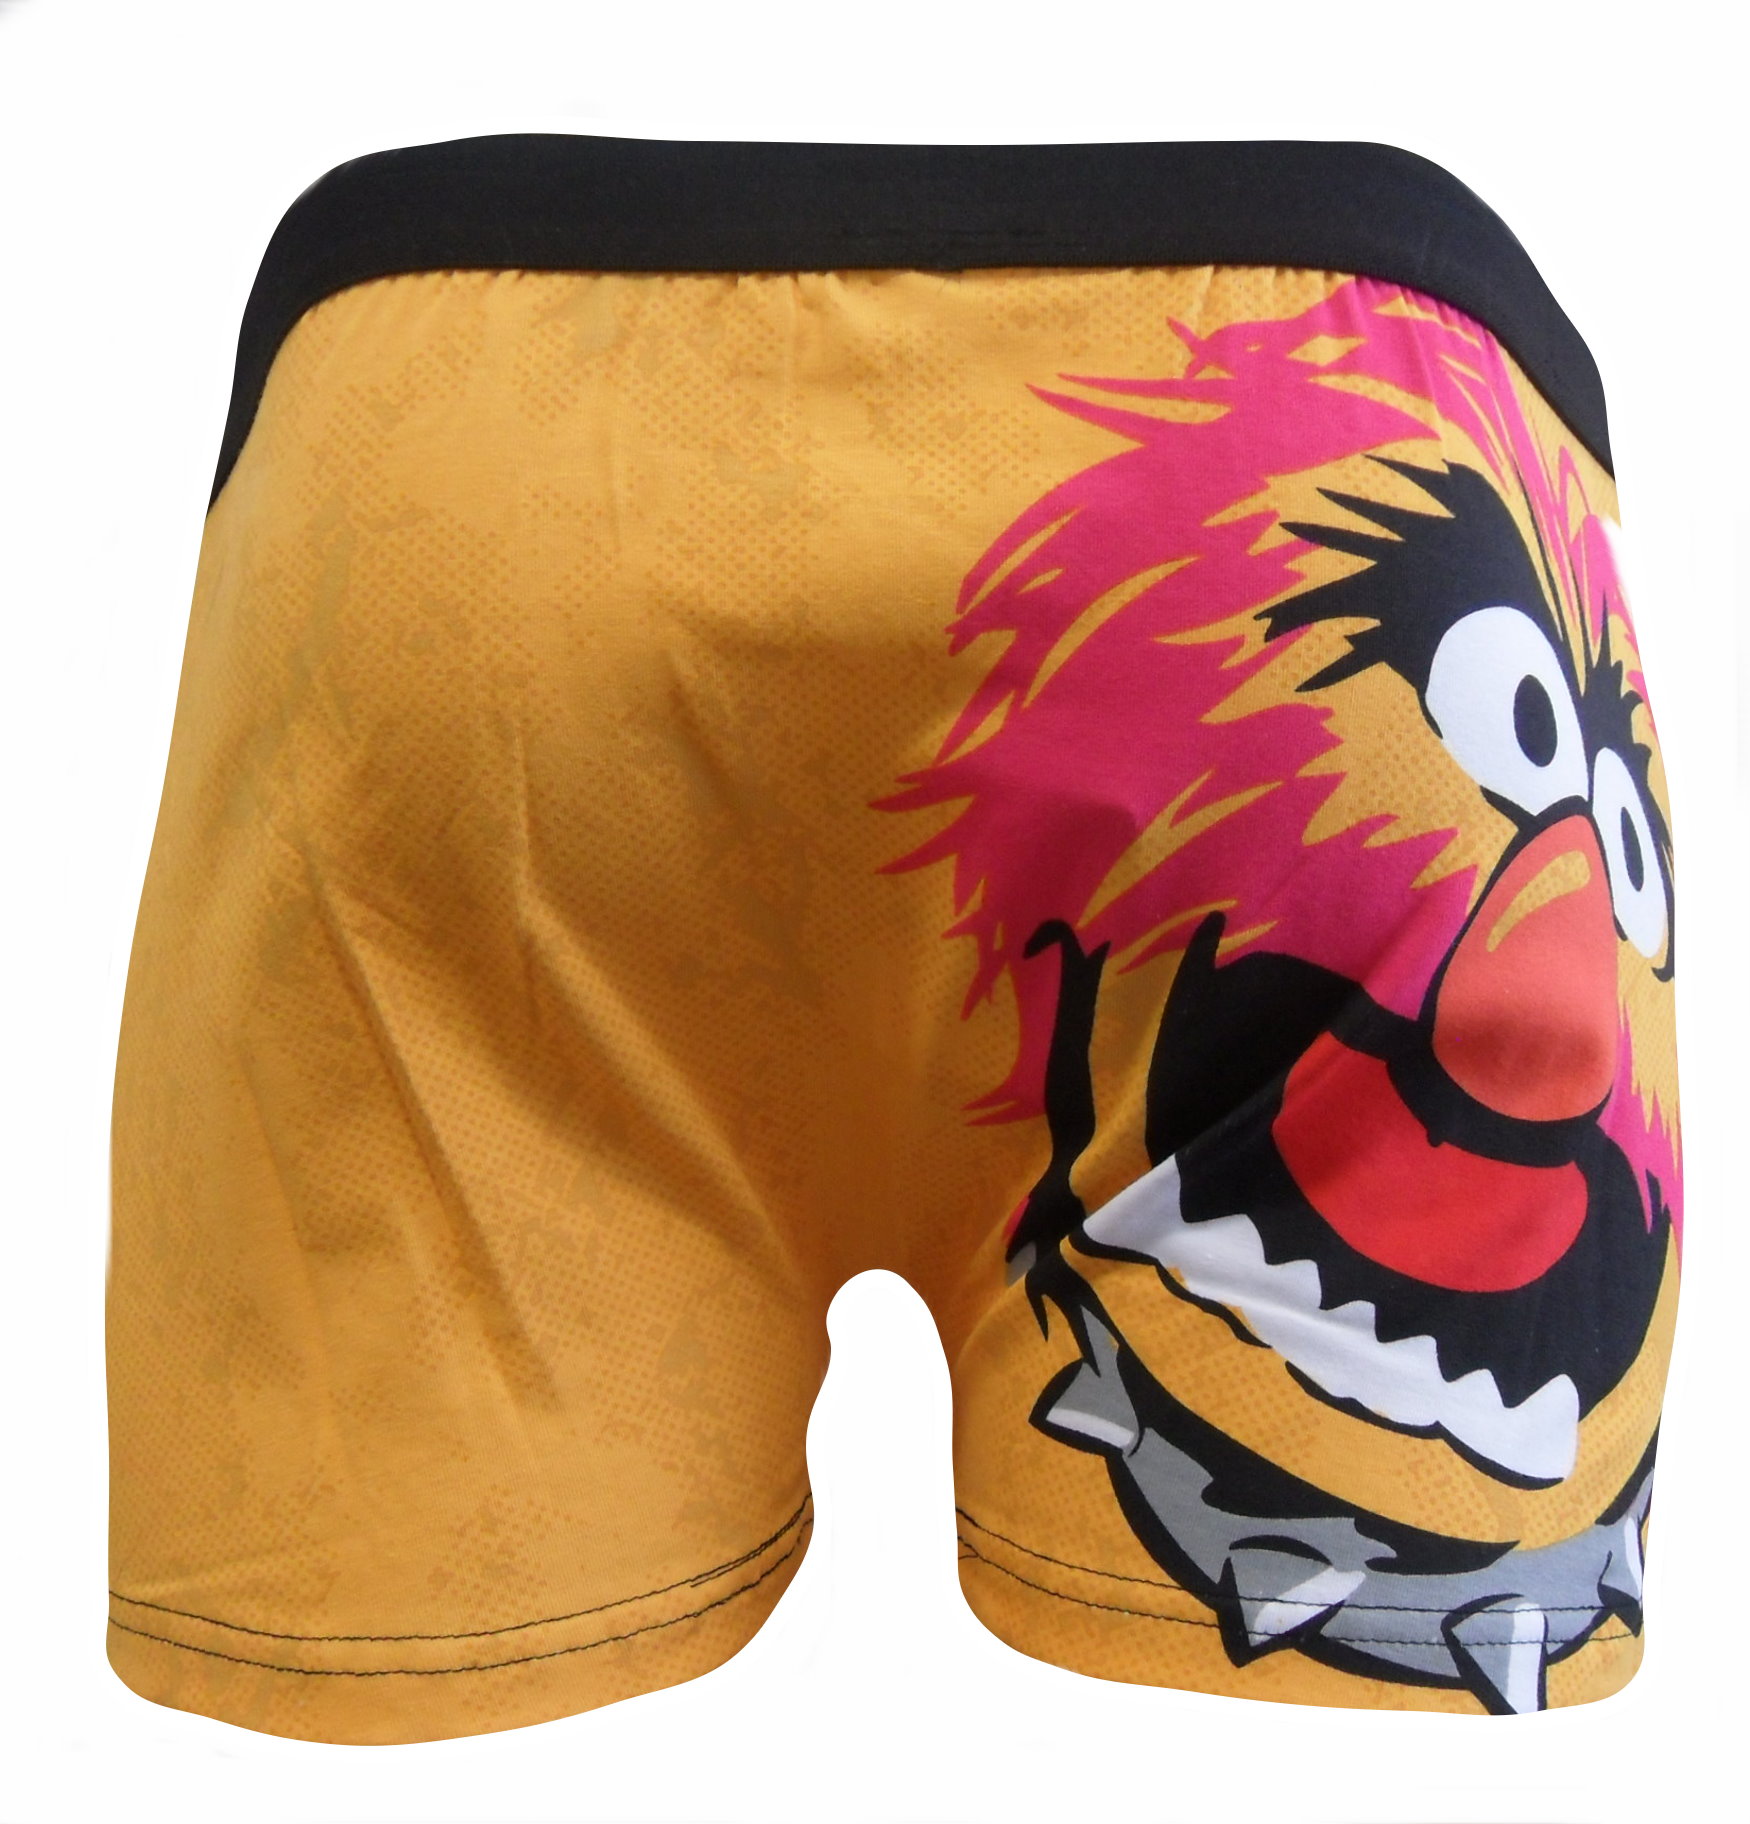 The Muppets Animal Boxer Shorts MUW38 (2).JPG  by Thingimijigs